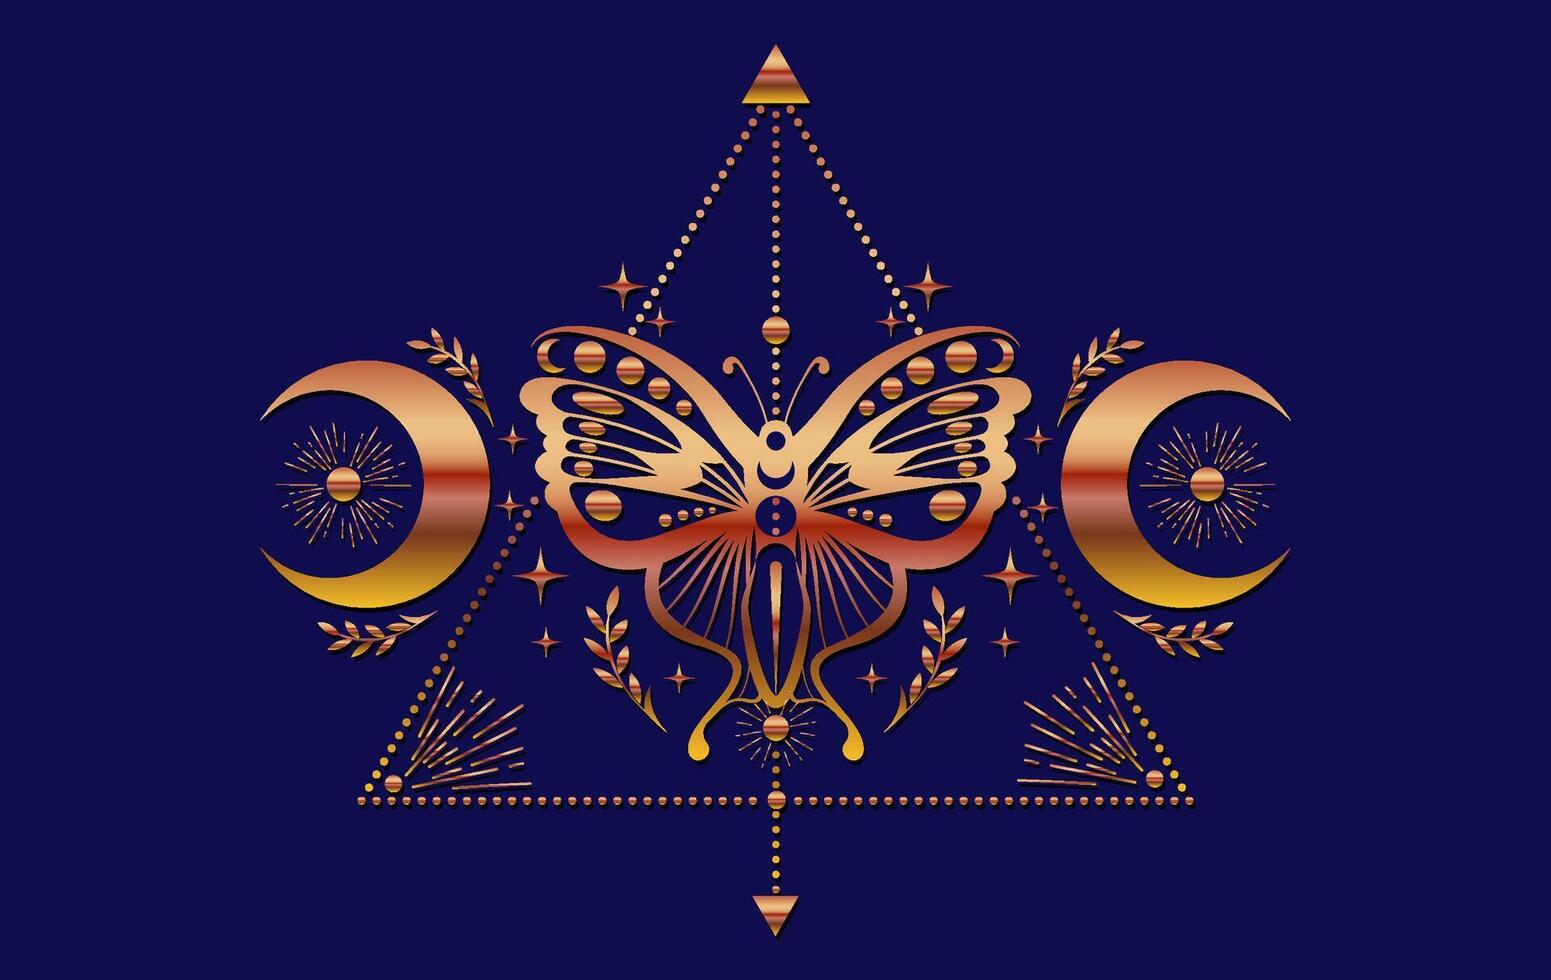 místico ouro mariposa, Magia borboleta e crescente lua, sagrado símbolos para feitiçaria, oculto, esoterismo, imprimir, poster. colorida pagão mágico foca isolado em azul fundo vetor